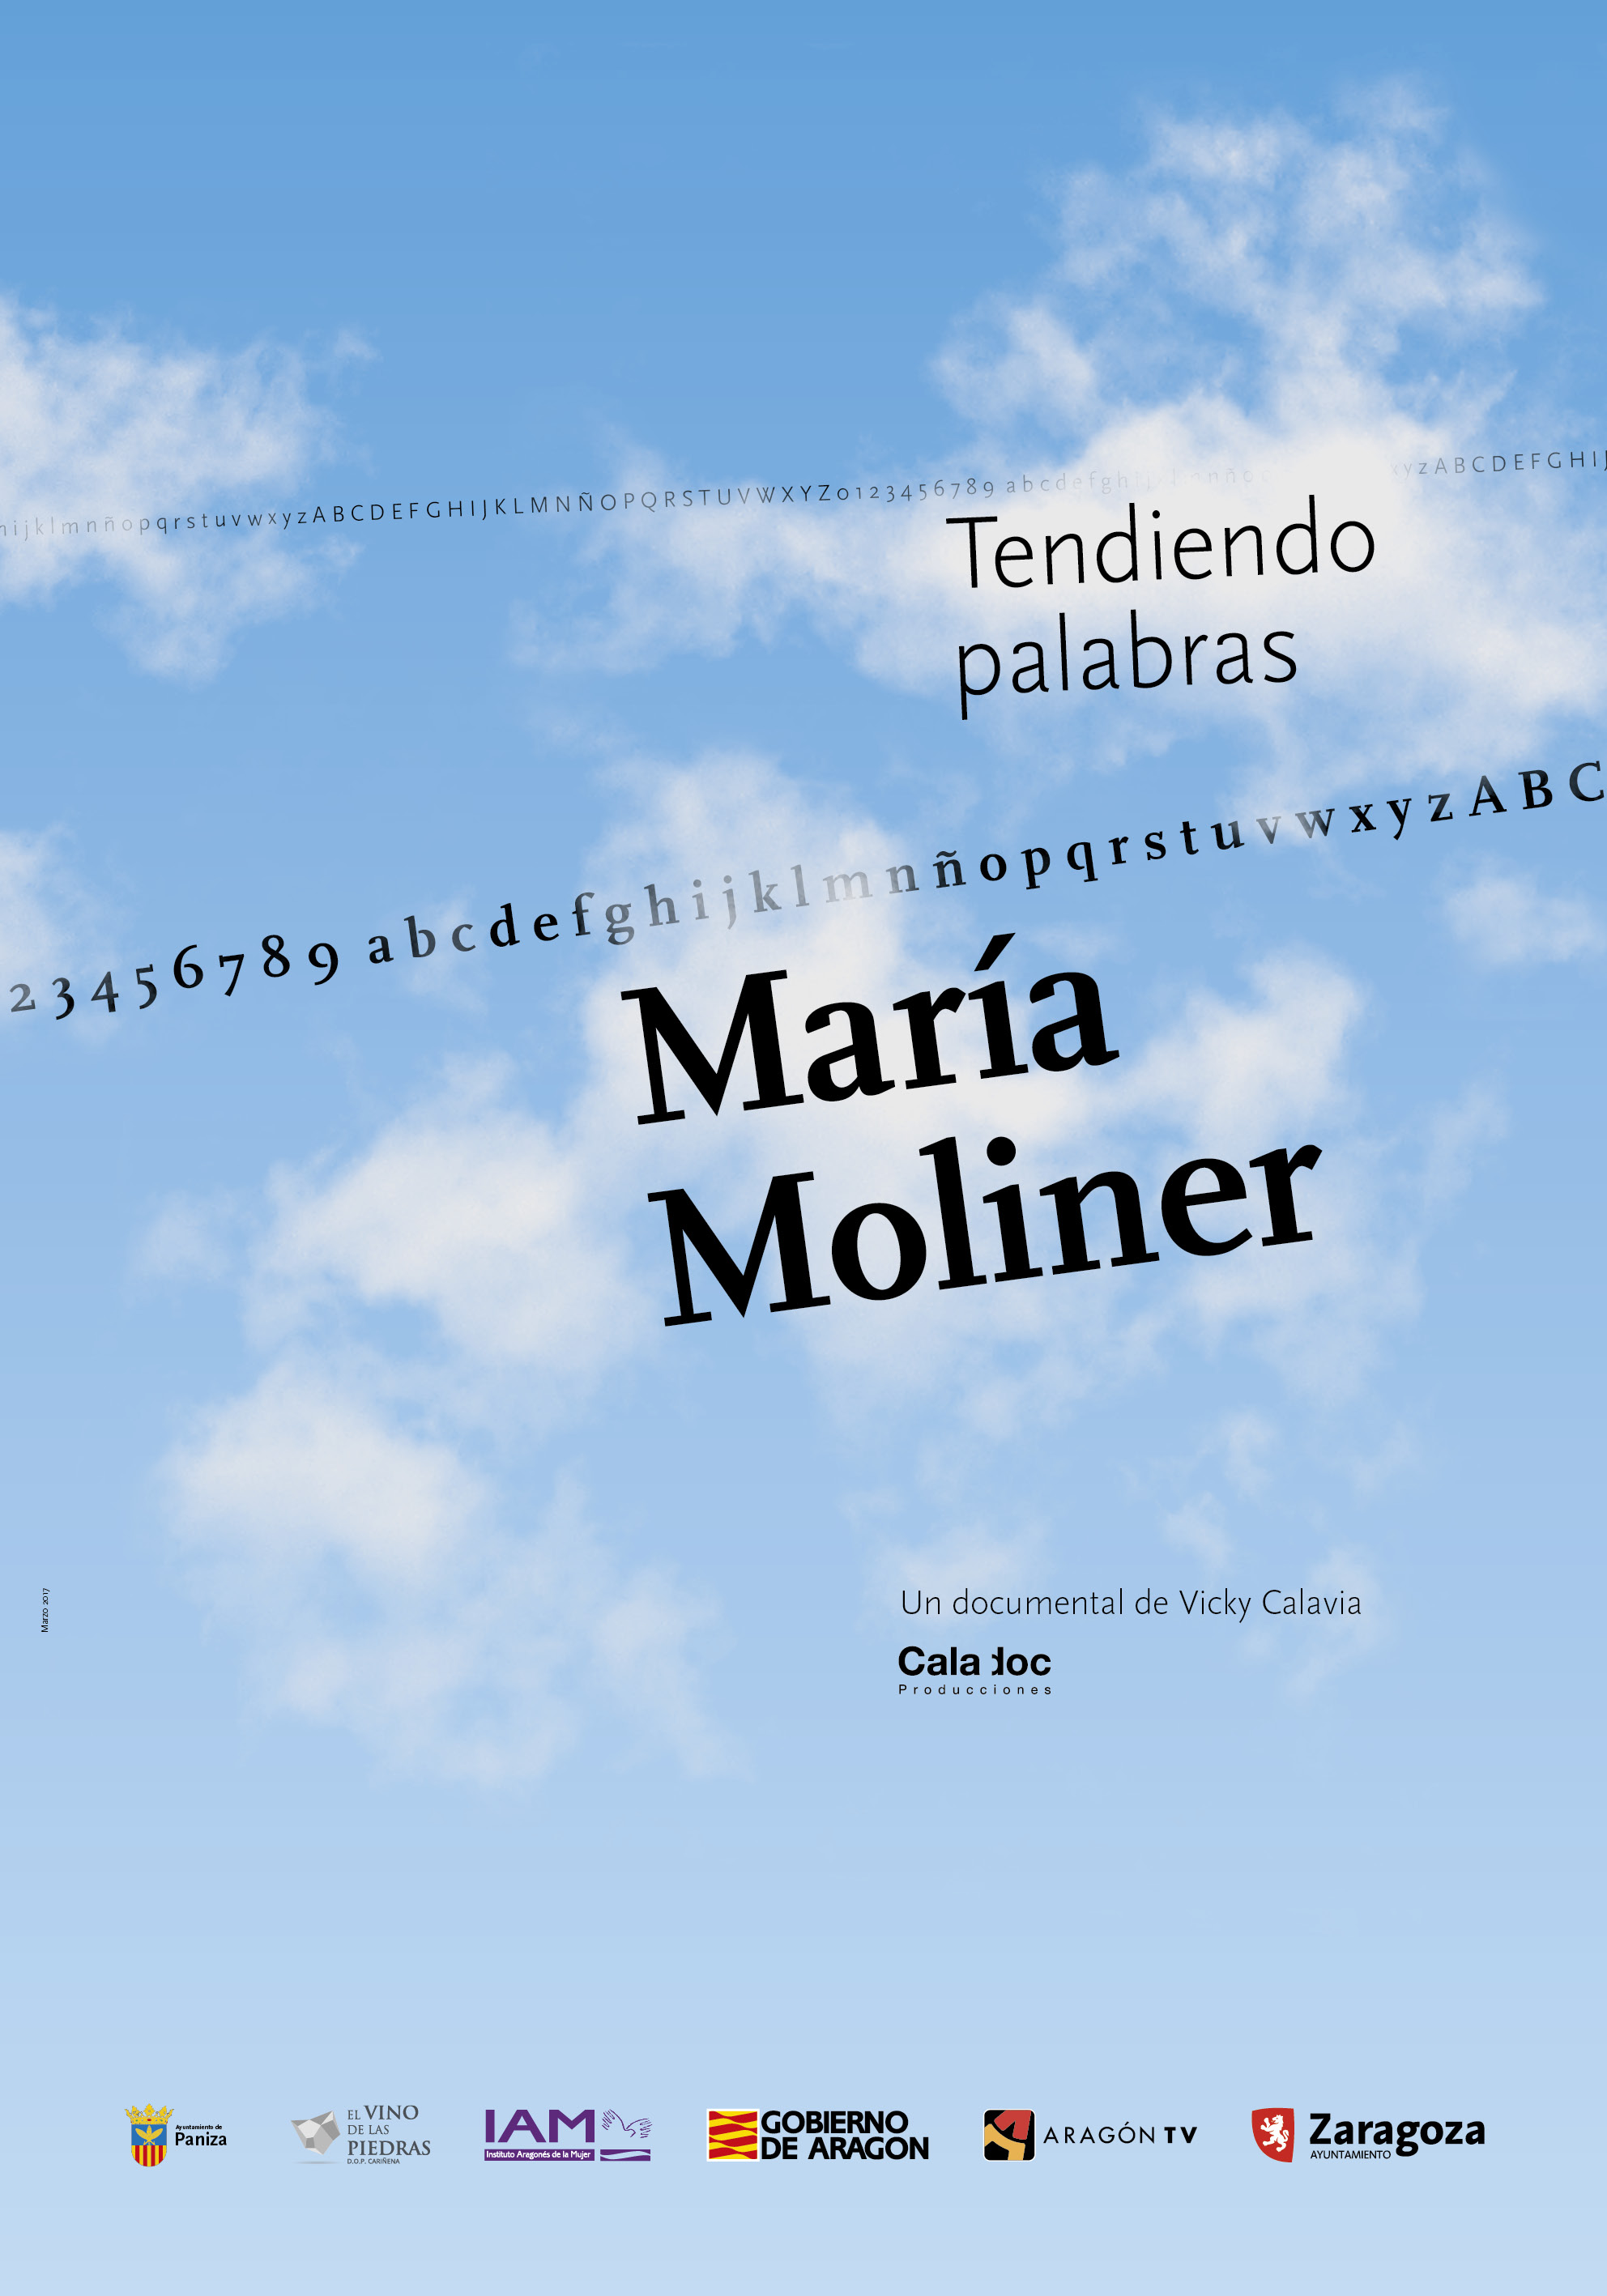 Κινηματογραφική προβολή: "8 Μαρτίου, Κινηματογράφος για την Γυναίκα. Μαρία Μολινέρ, απλώνοντας λέξεις